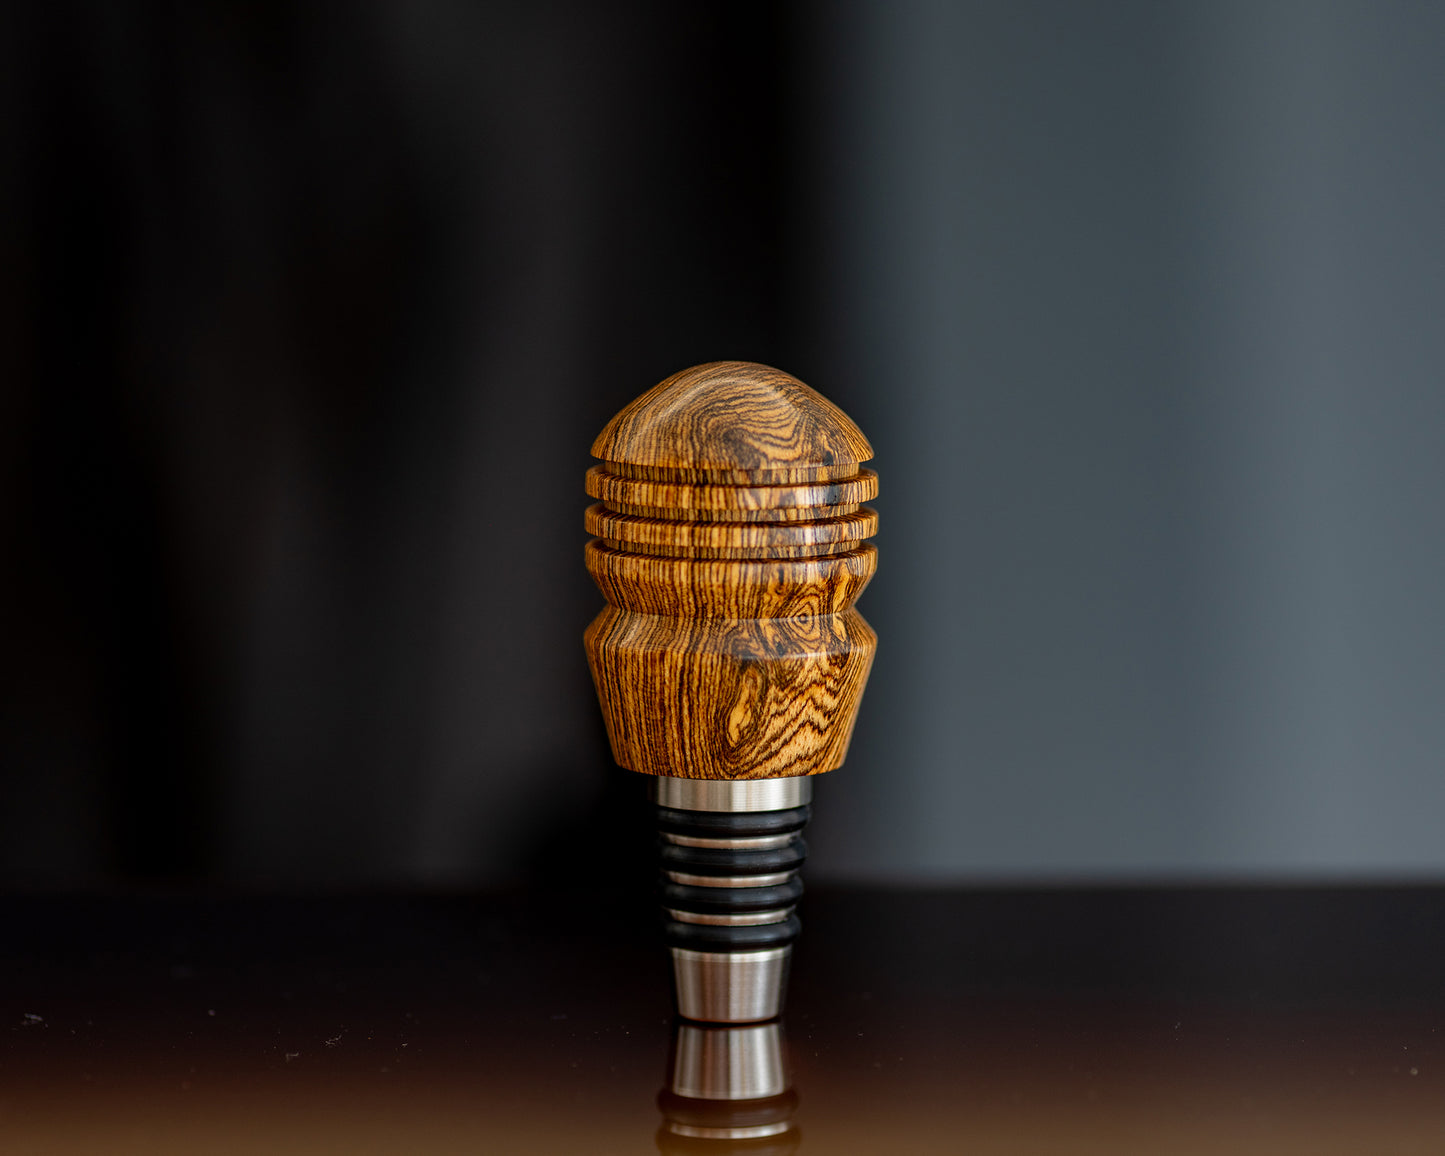 Hand-turned Wooden Bottle Stopper - Bocote